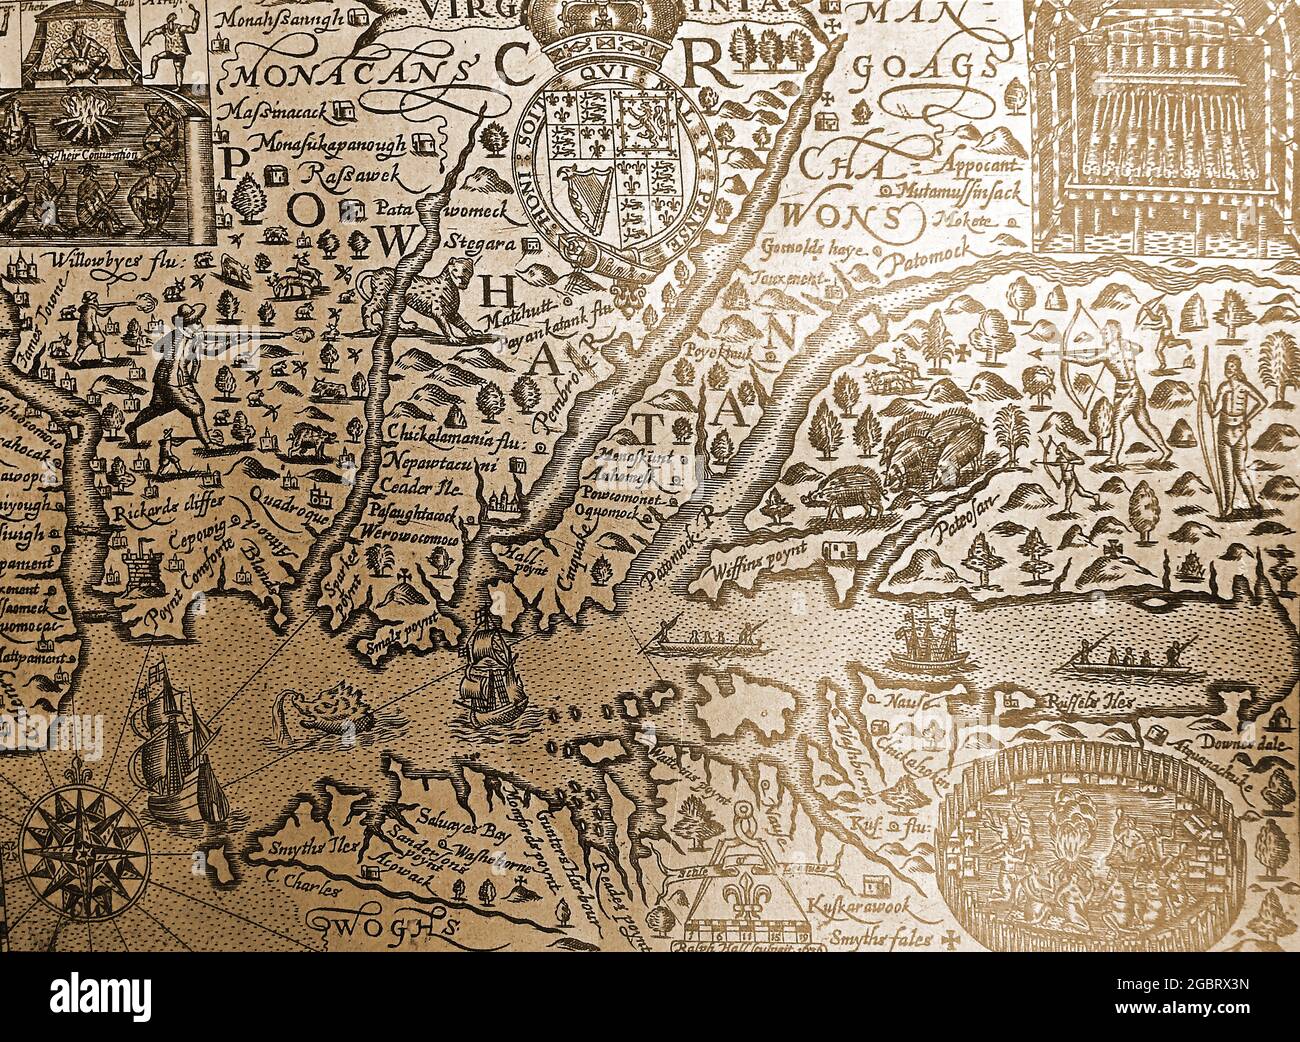 Una mappa dettagliata degli inizi del XVII secolo dello stato americano della Virginia con i nomi originali delle località, i nomi indiani nativi e le ortografie originali. Foto Stock